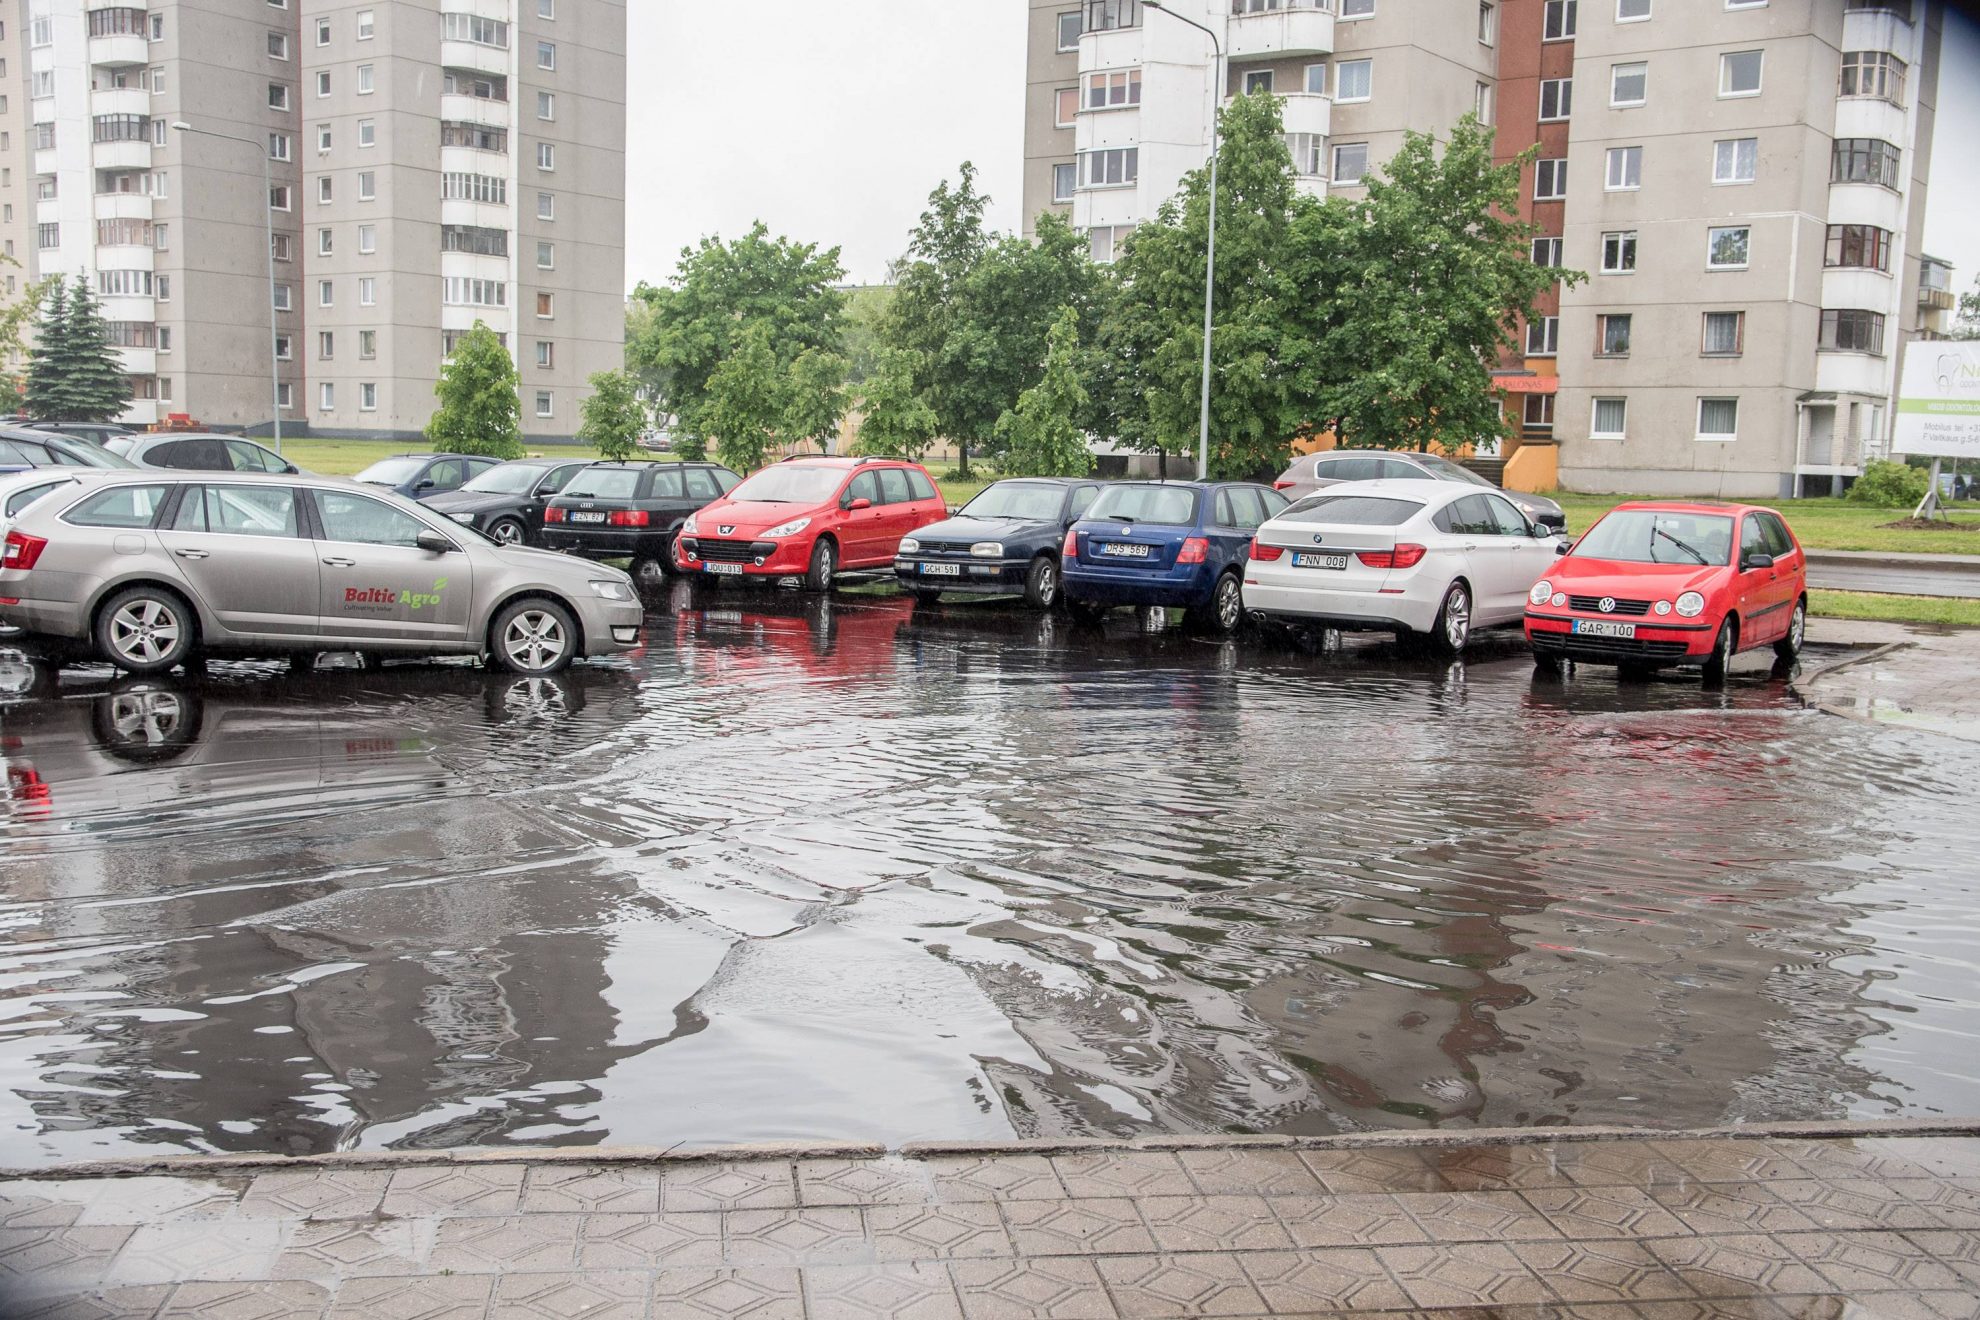 Prieš kelias dienas prie Panevėžio miesto poliklinikos naujai išasfaltuota automobilių stovėjimo aikštelė po pirmo lietaus atvėrė Savivaldybės darbo spragas